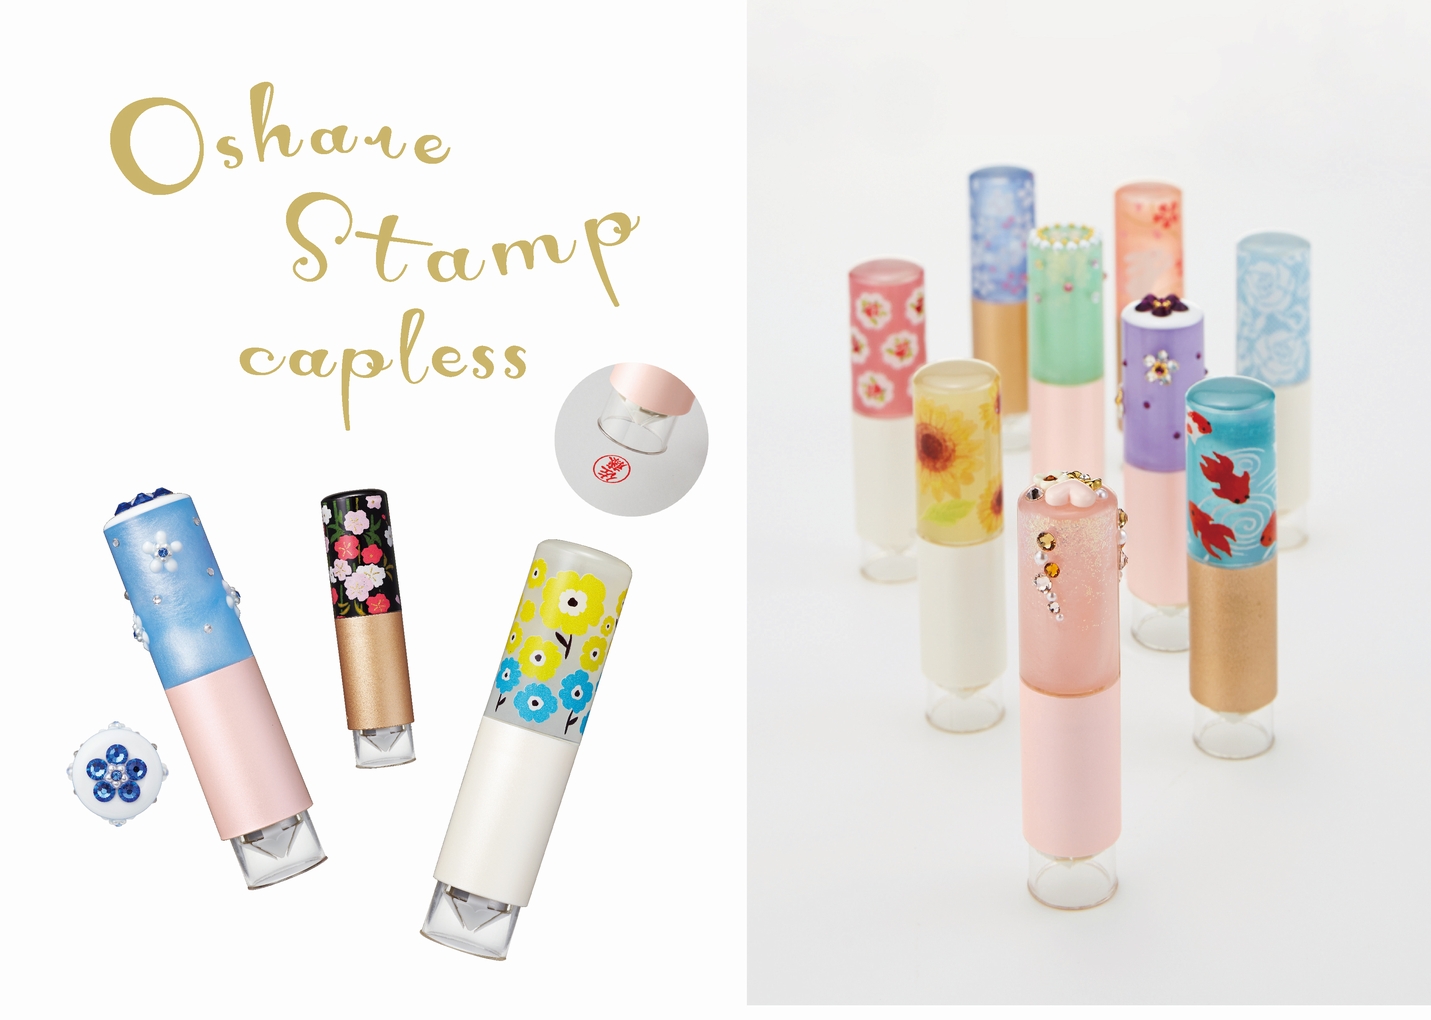 豊富な45種から選べる多彩なデザインのネーム印 おしゃれスタンプ キャップレス 発売 シヤチハタ株式会社のプレスリリース